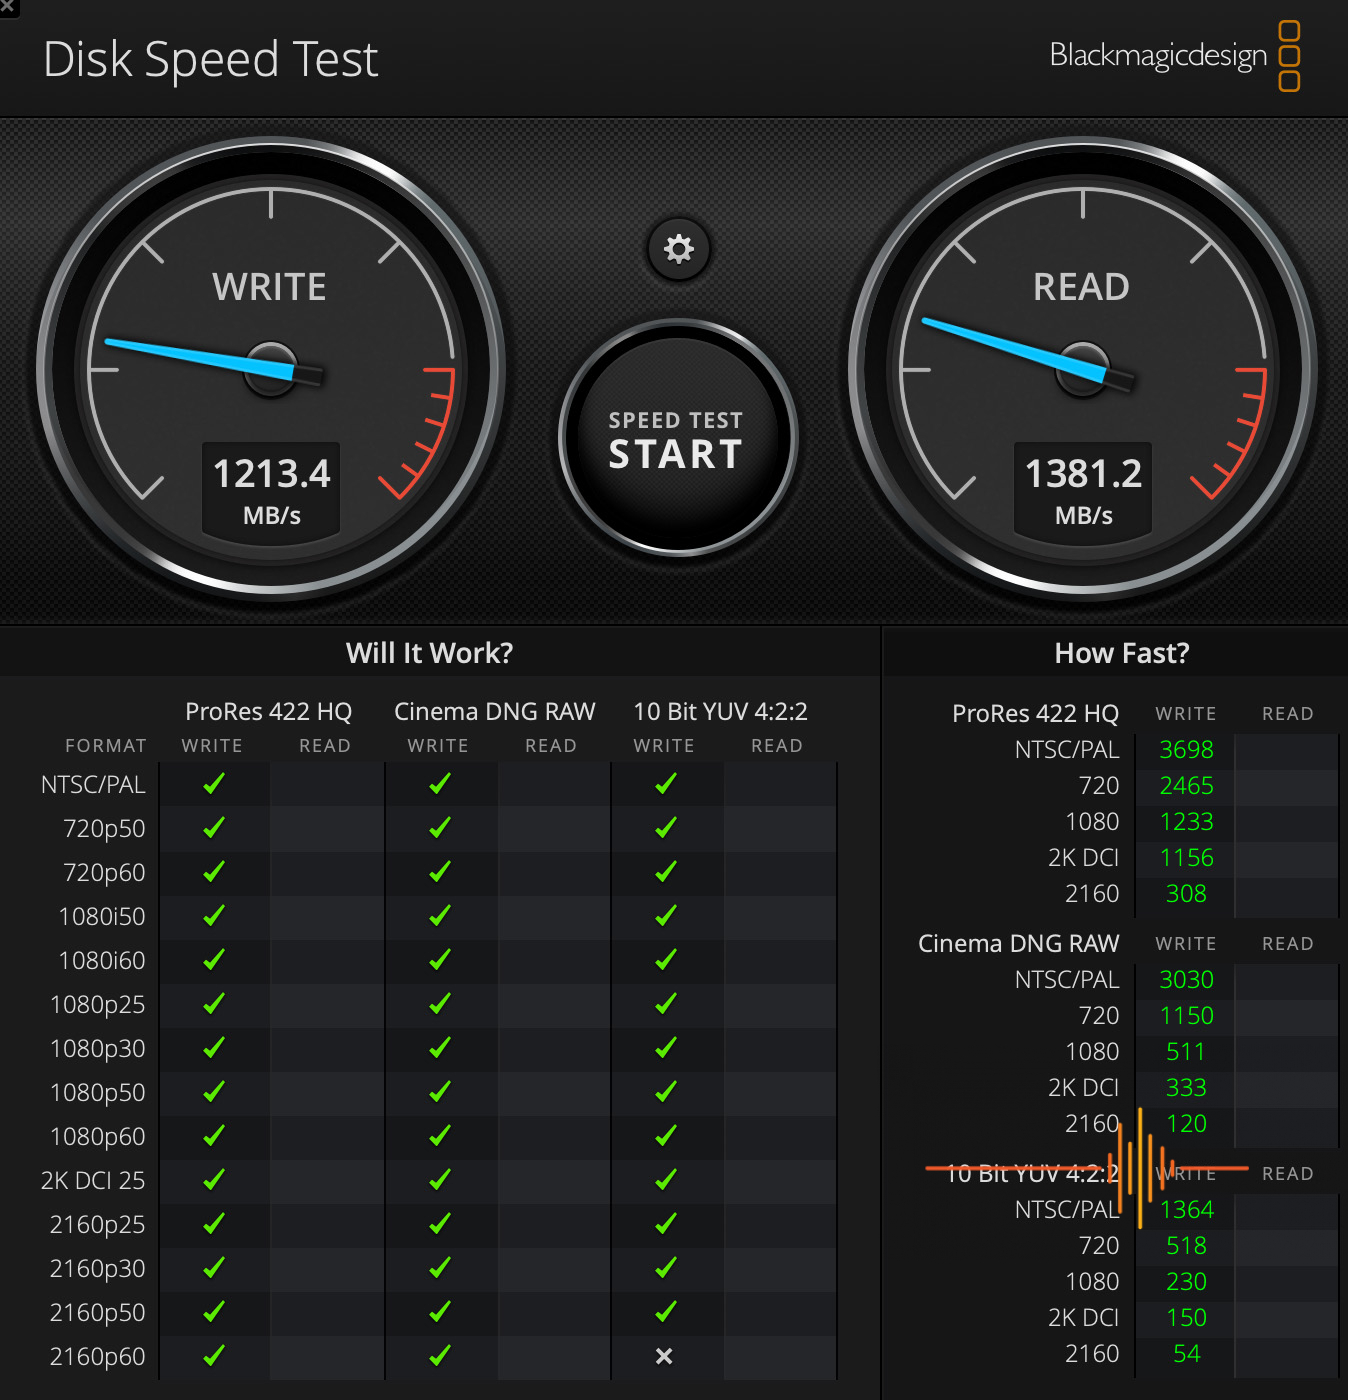 WD Blue SN570 NVMe SSD 1TB speed test